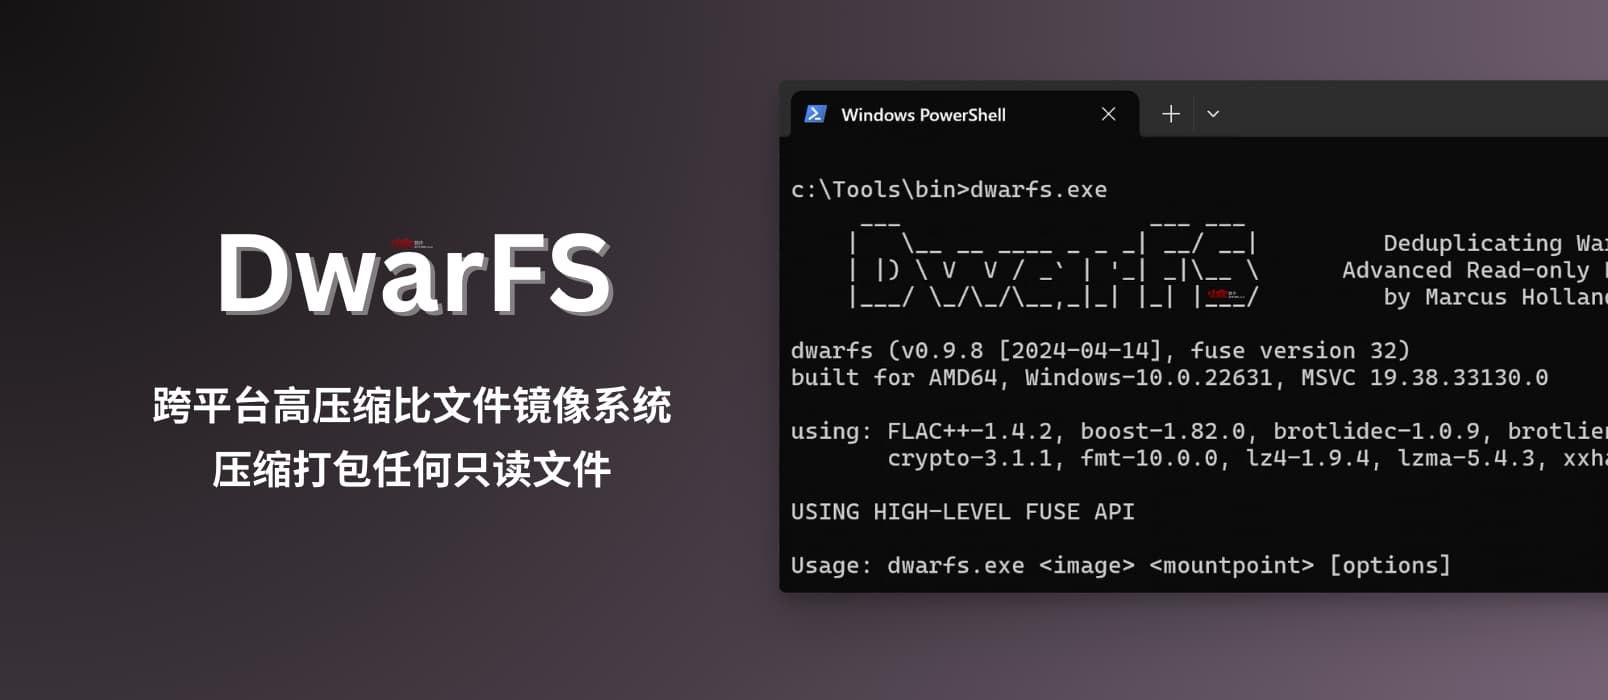 DwarFS - 跨平台、快速、高压缩比文件镜像系统：非常适合压缩打包海量小文件 8